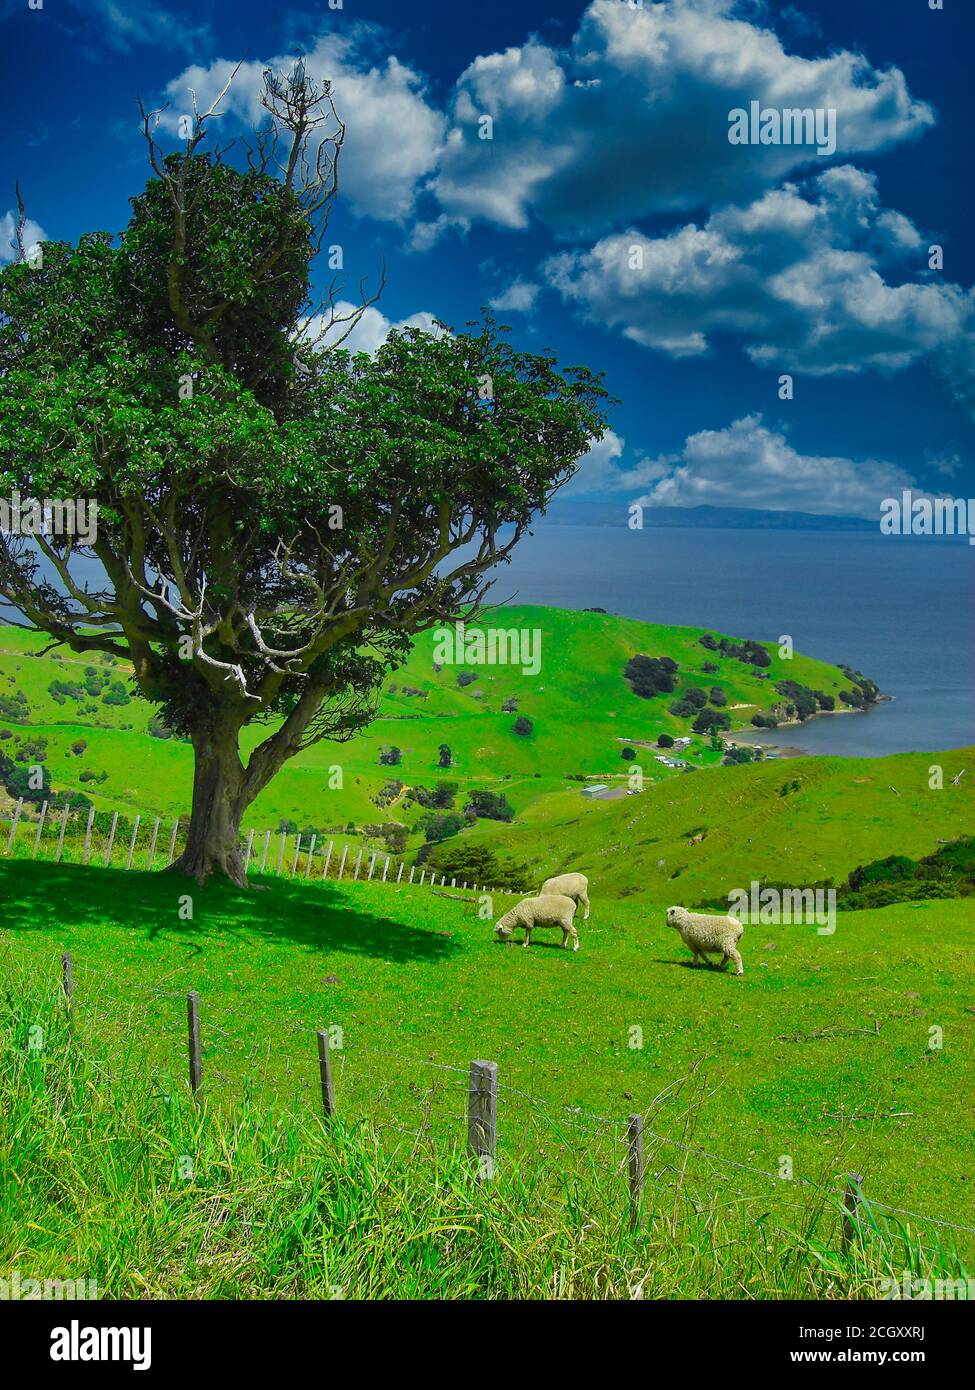 Pecore in verde prato di montagna, scena rurale in Nuova Zelanda con un albero in rana dell'oceano pacifico Foto Stock